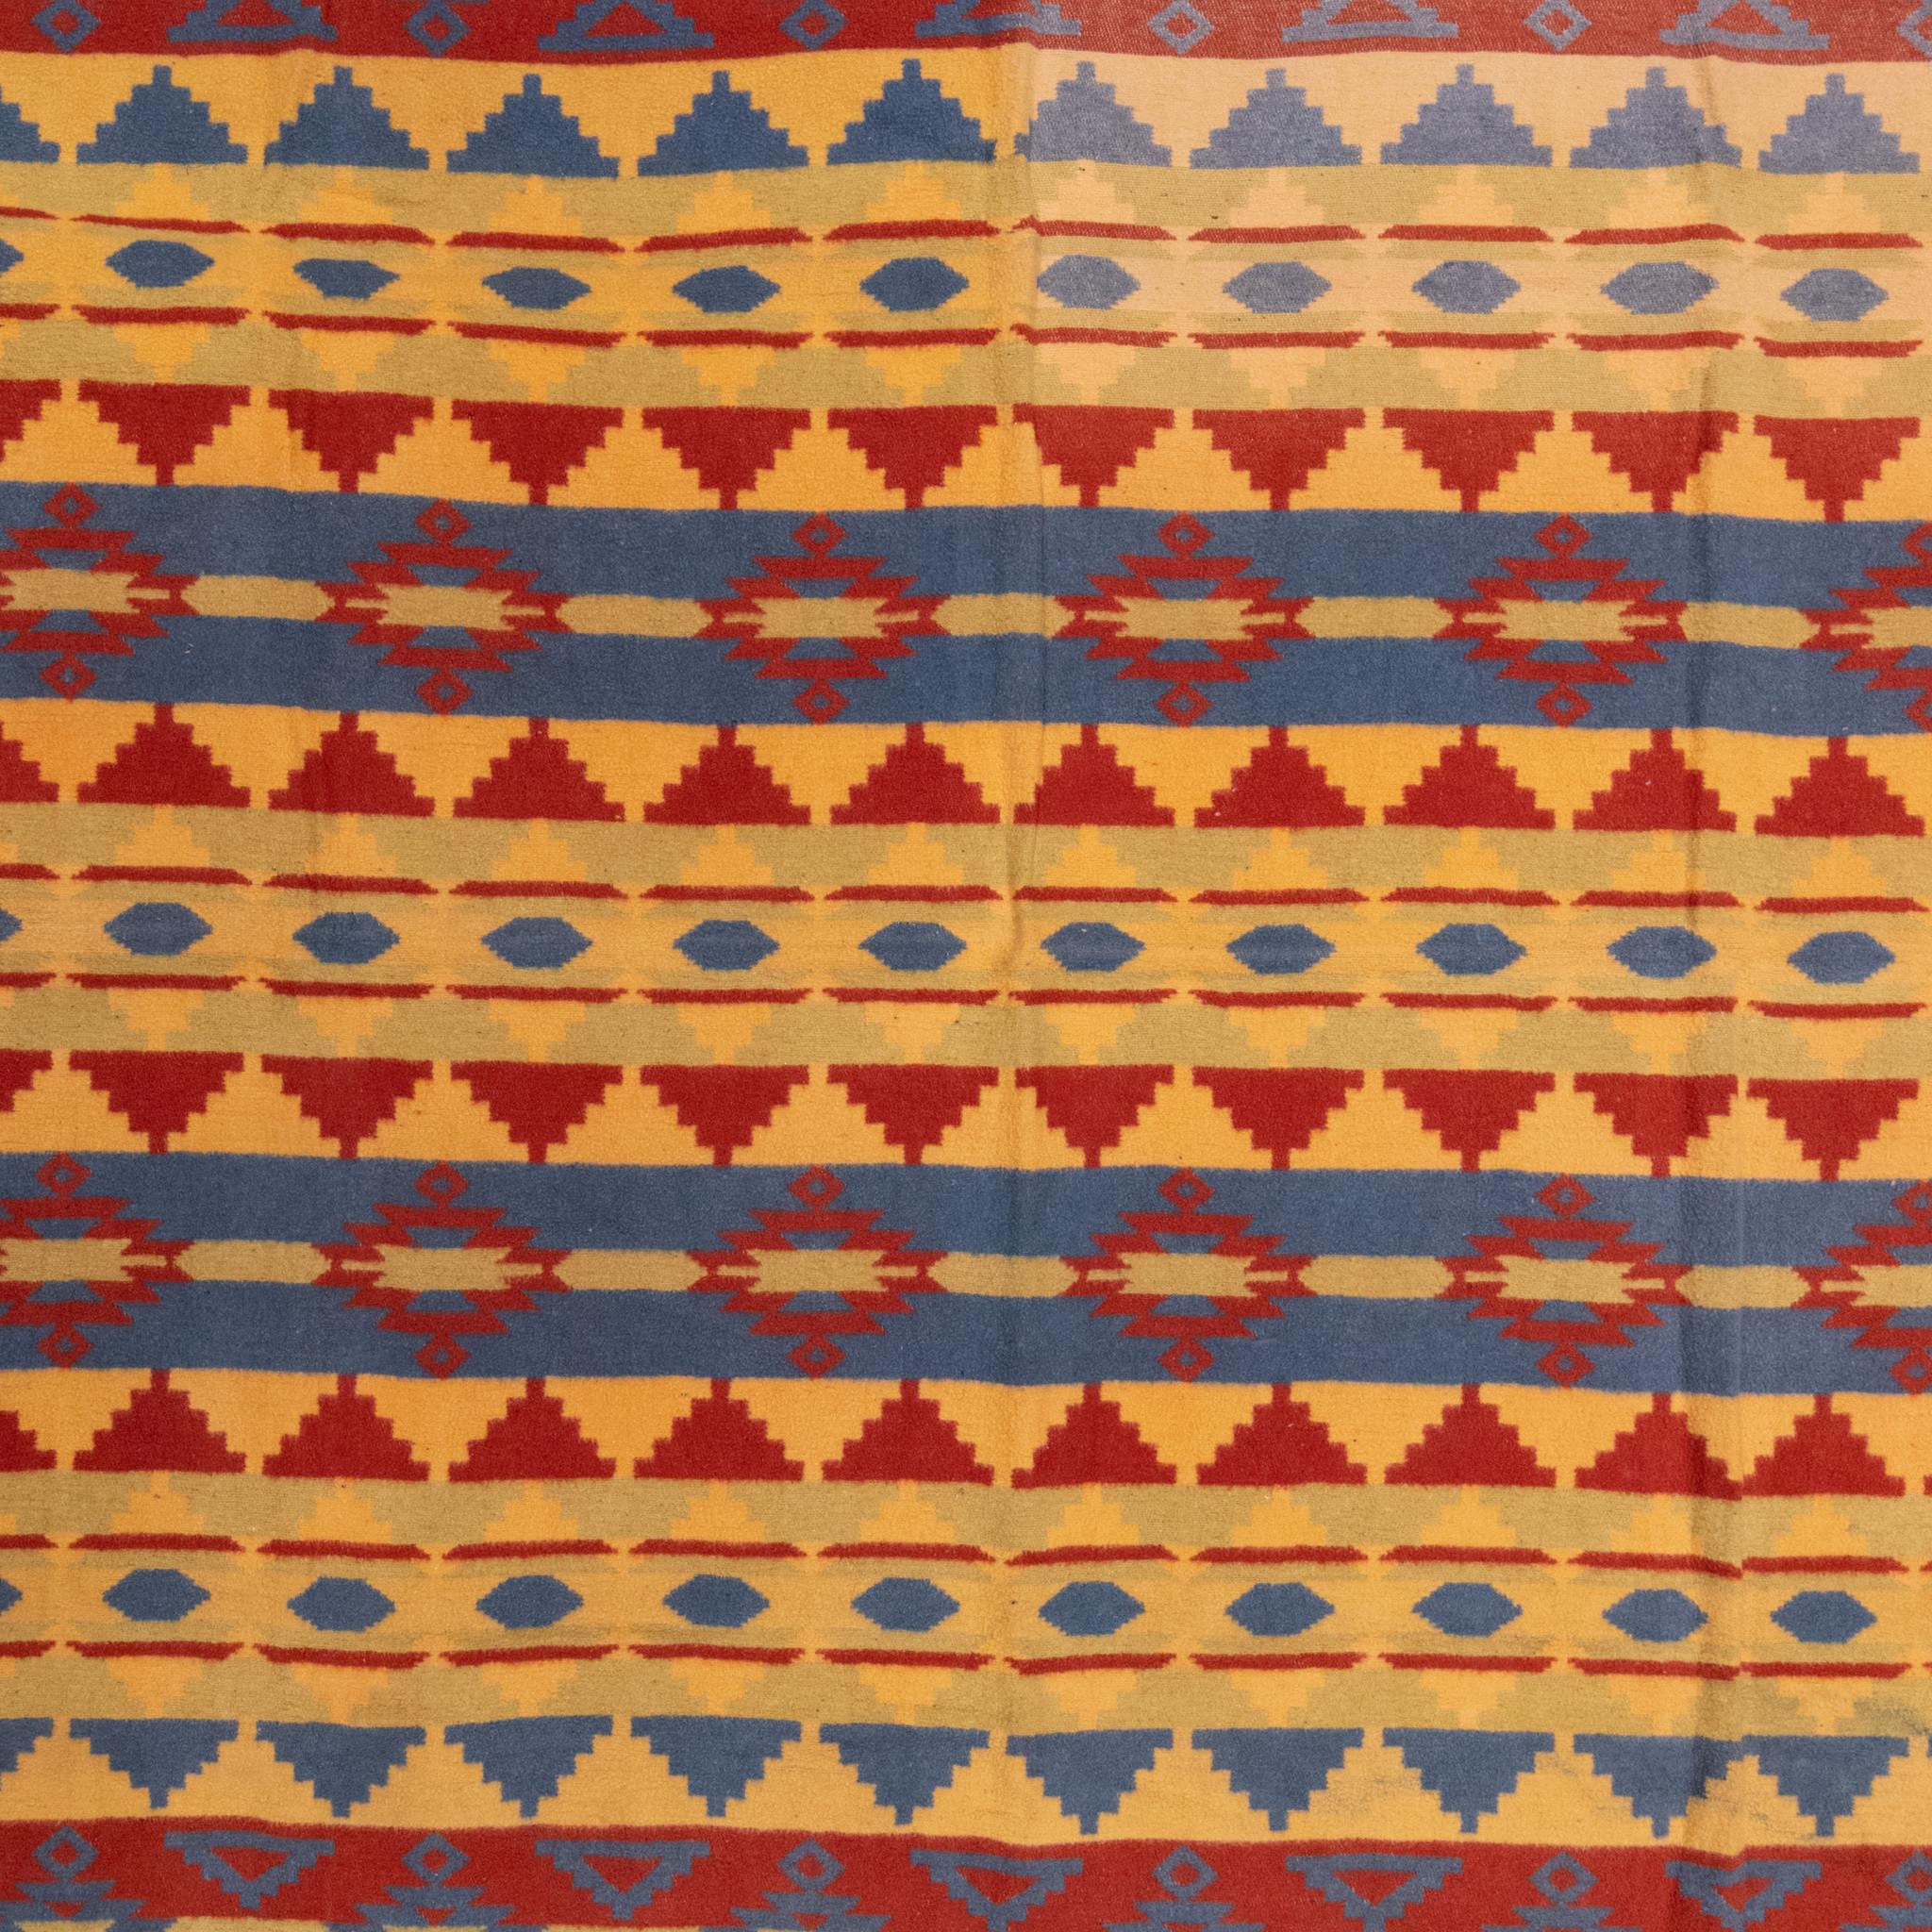 Beidseitig bedruckte Decke aus Baumwolle mit geometrischen Mustern. Guter Zustand, leichte Verblassung an einer Ecke, die nicht stört.

Zeitraum: um 1920
Herkunft: Bake
Größe: 64